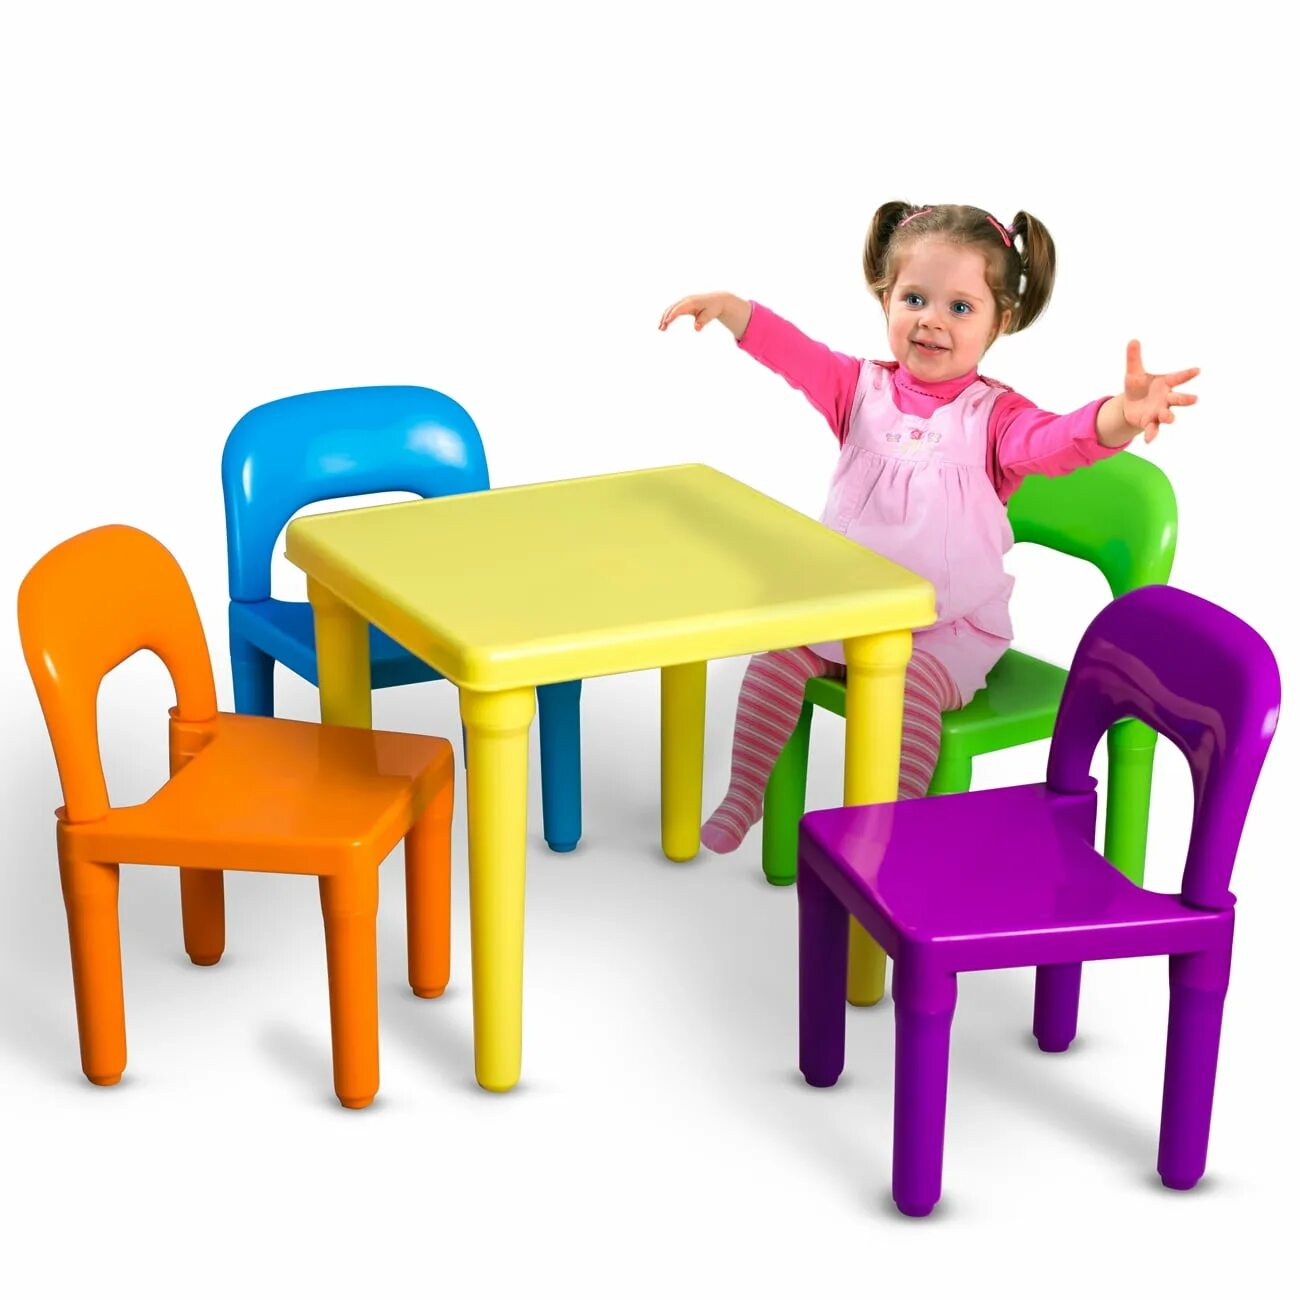 Детская пластиковая мебель. Столик для детей. Столик детский пластиковый. Детские столы и стулья для дошкольников.